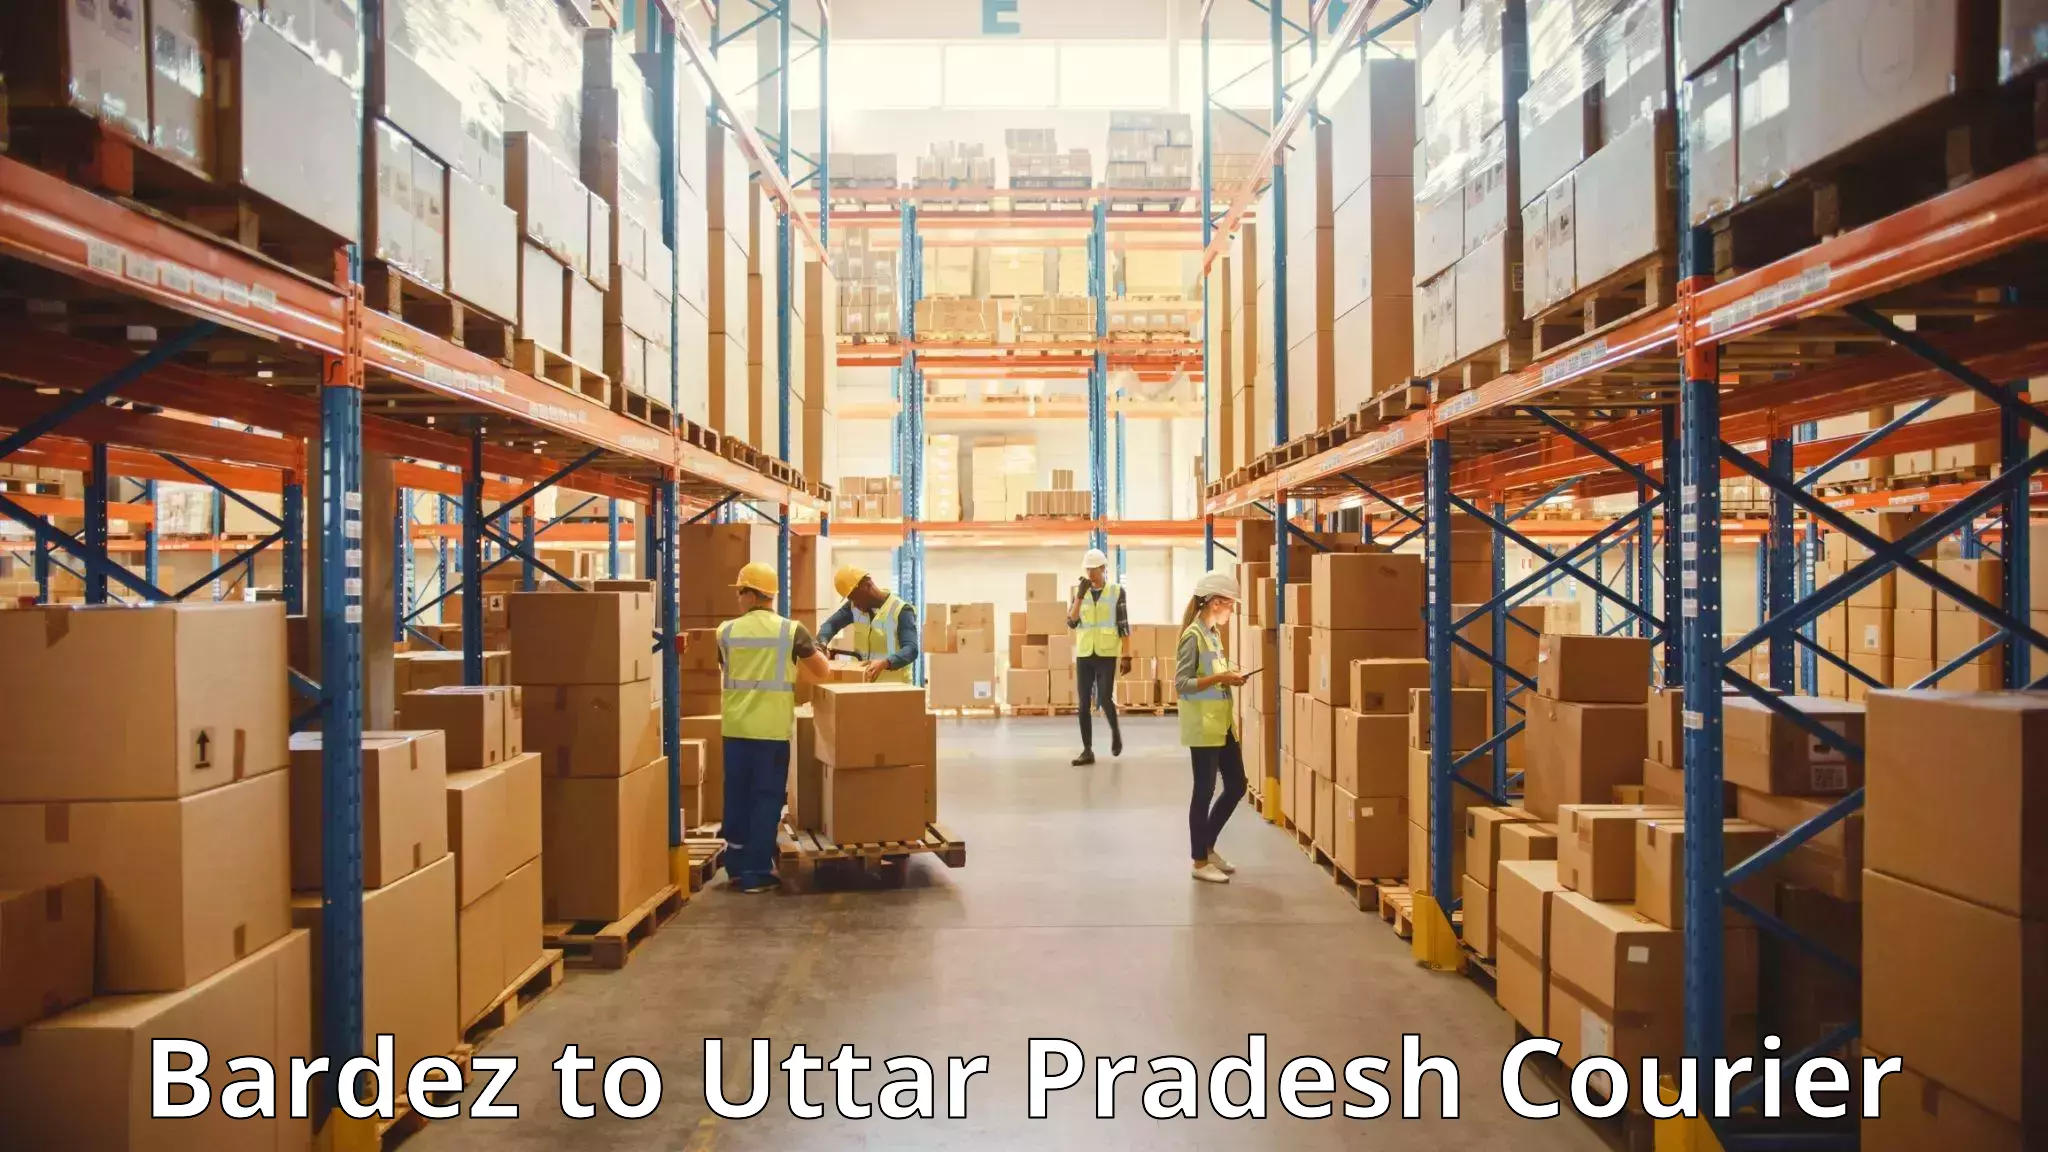 Luggage transport consulting Bardez to Uttar Pradesh